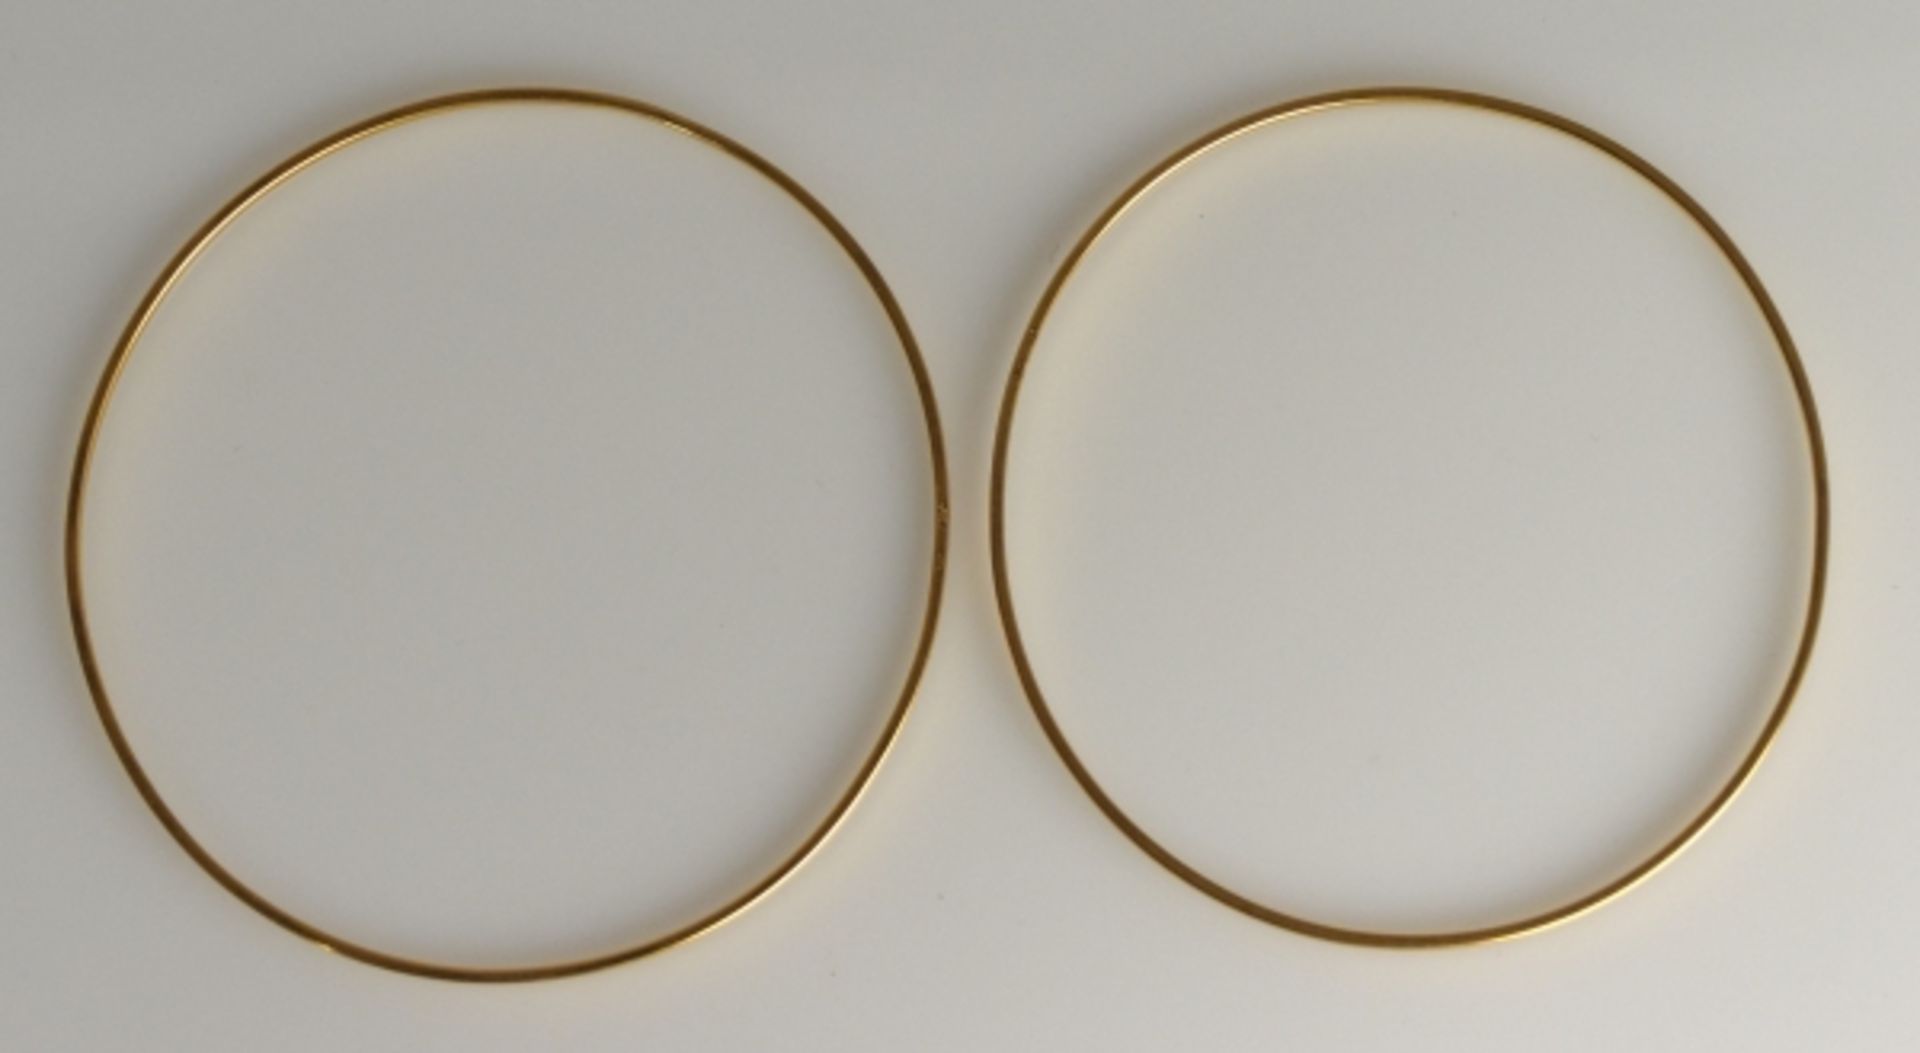 2 ARMREIFEN mit schmaler, polierter Oberfläche, Gelbgold 18ct, gesamt 9,9g, D 63mm - Image 2 of 3